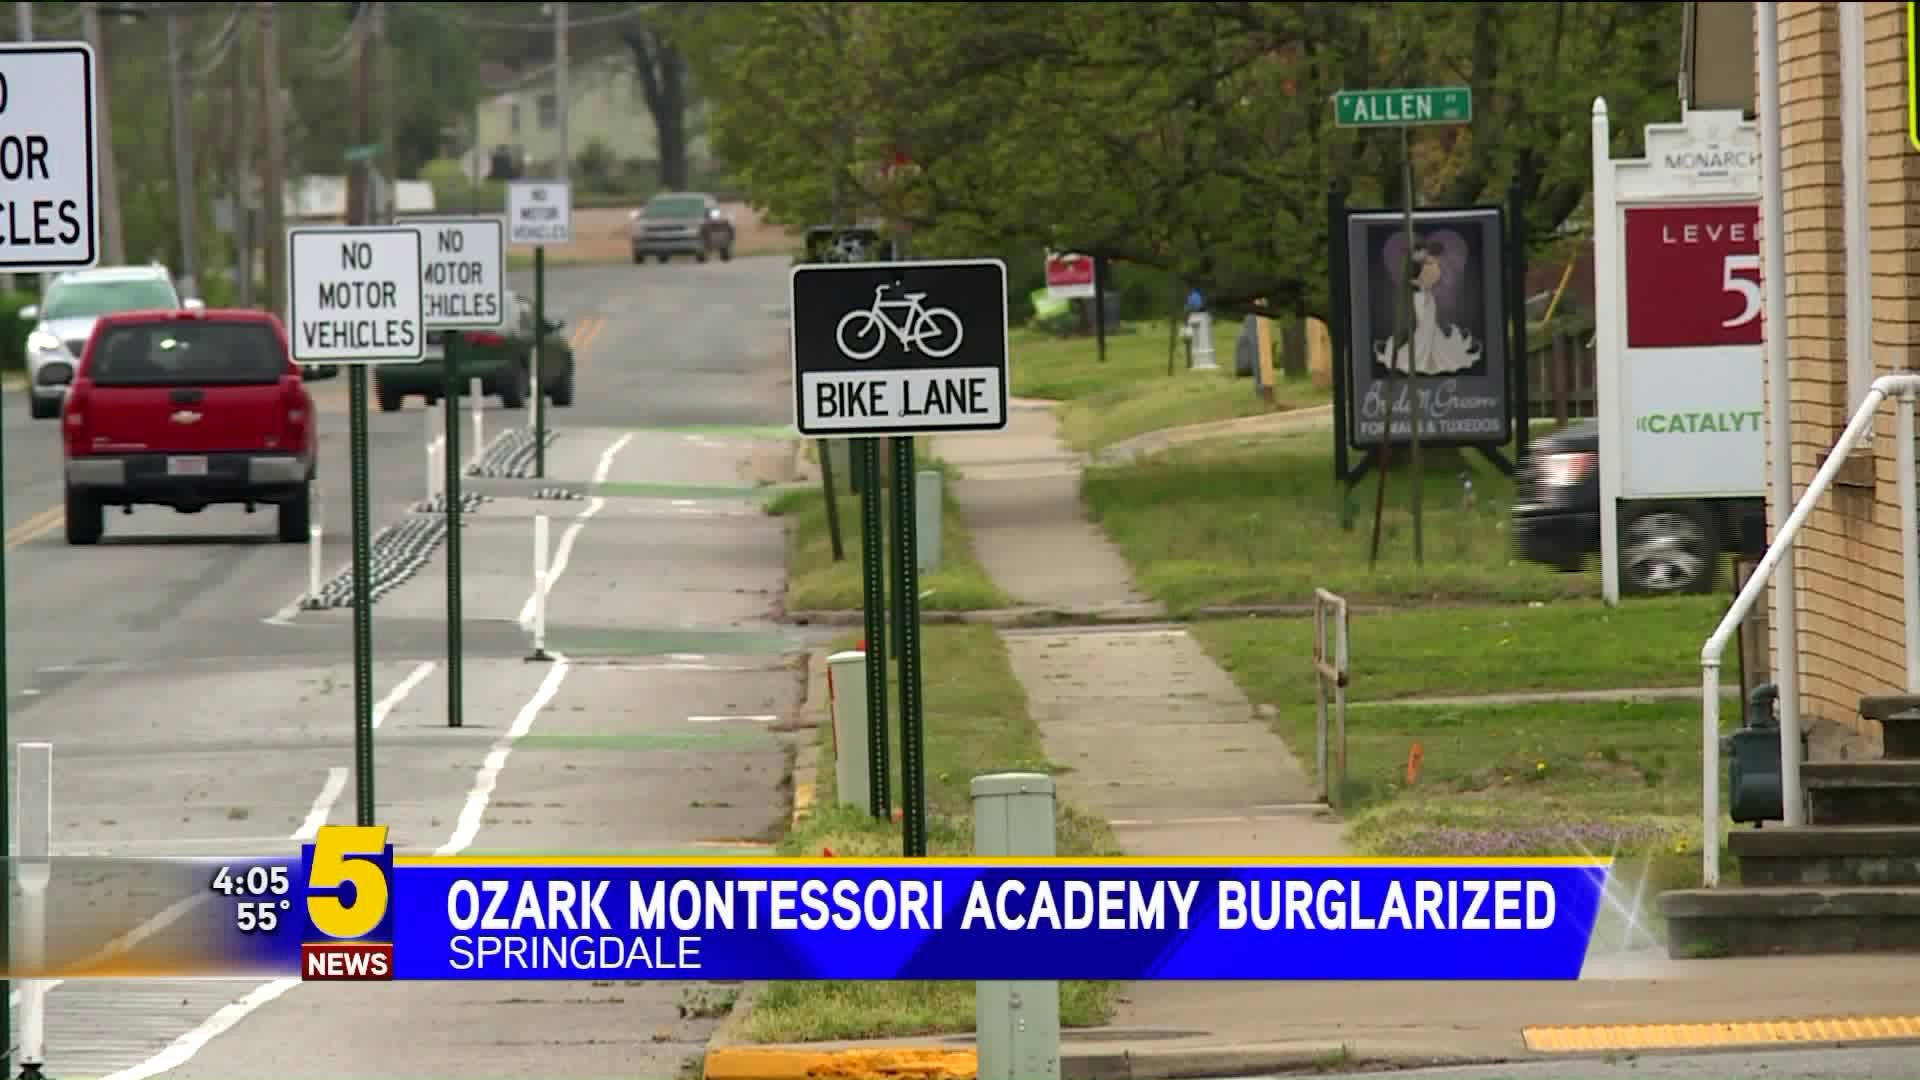 Ozark Montessori Academy Burglarized